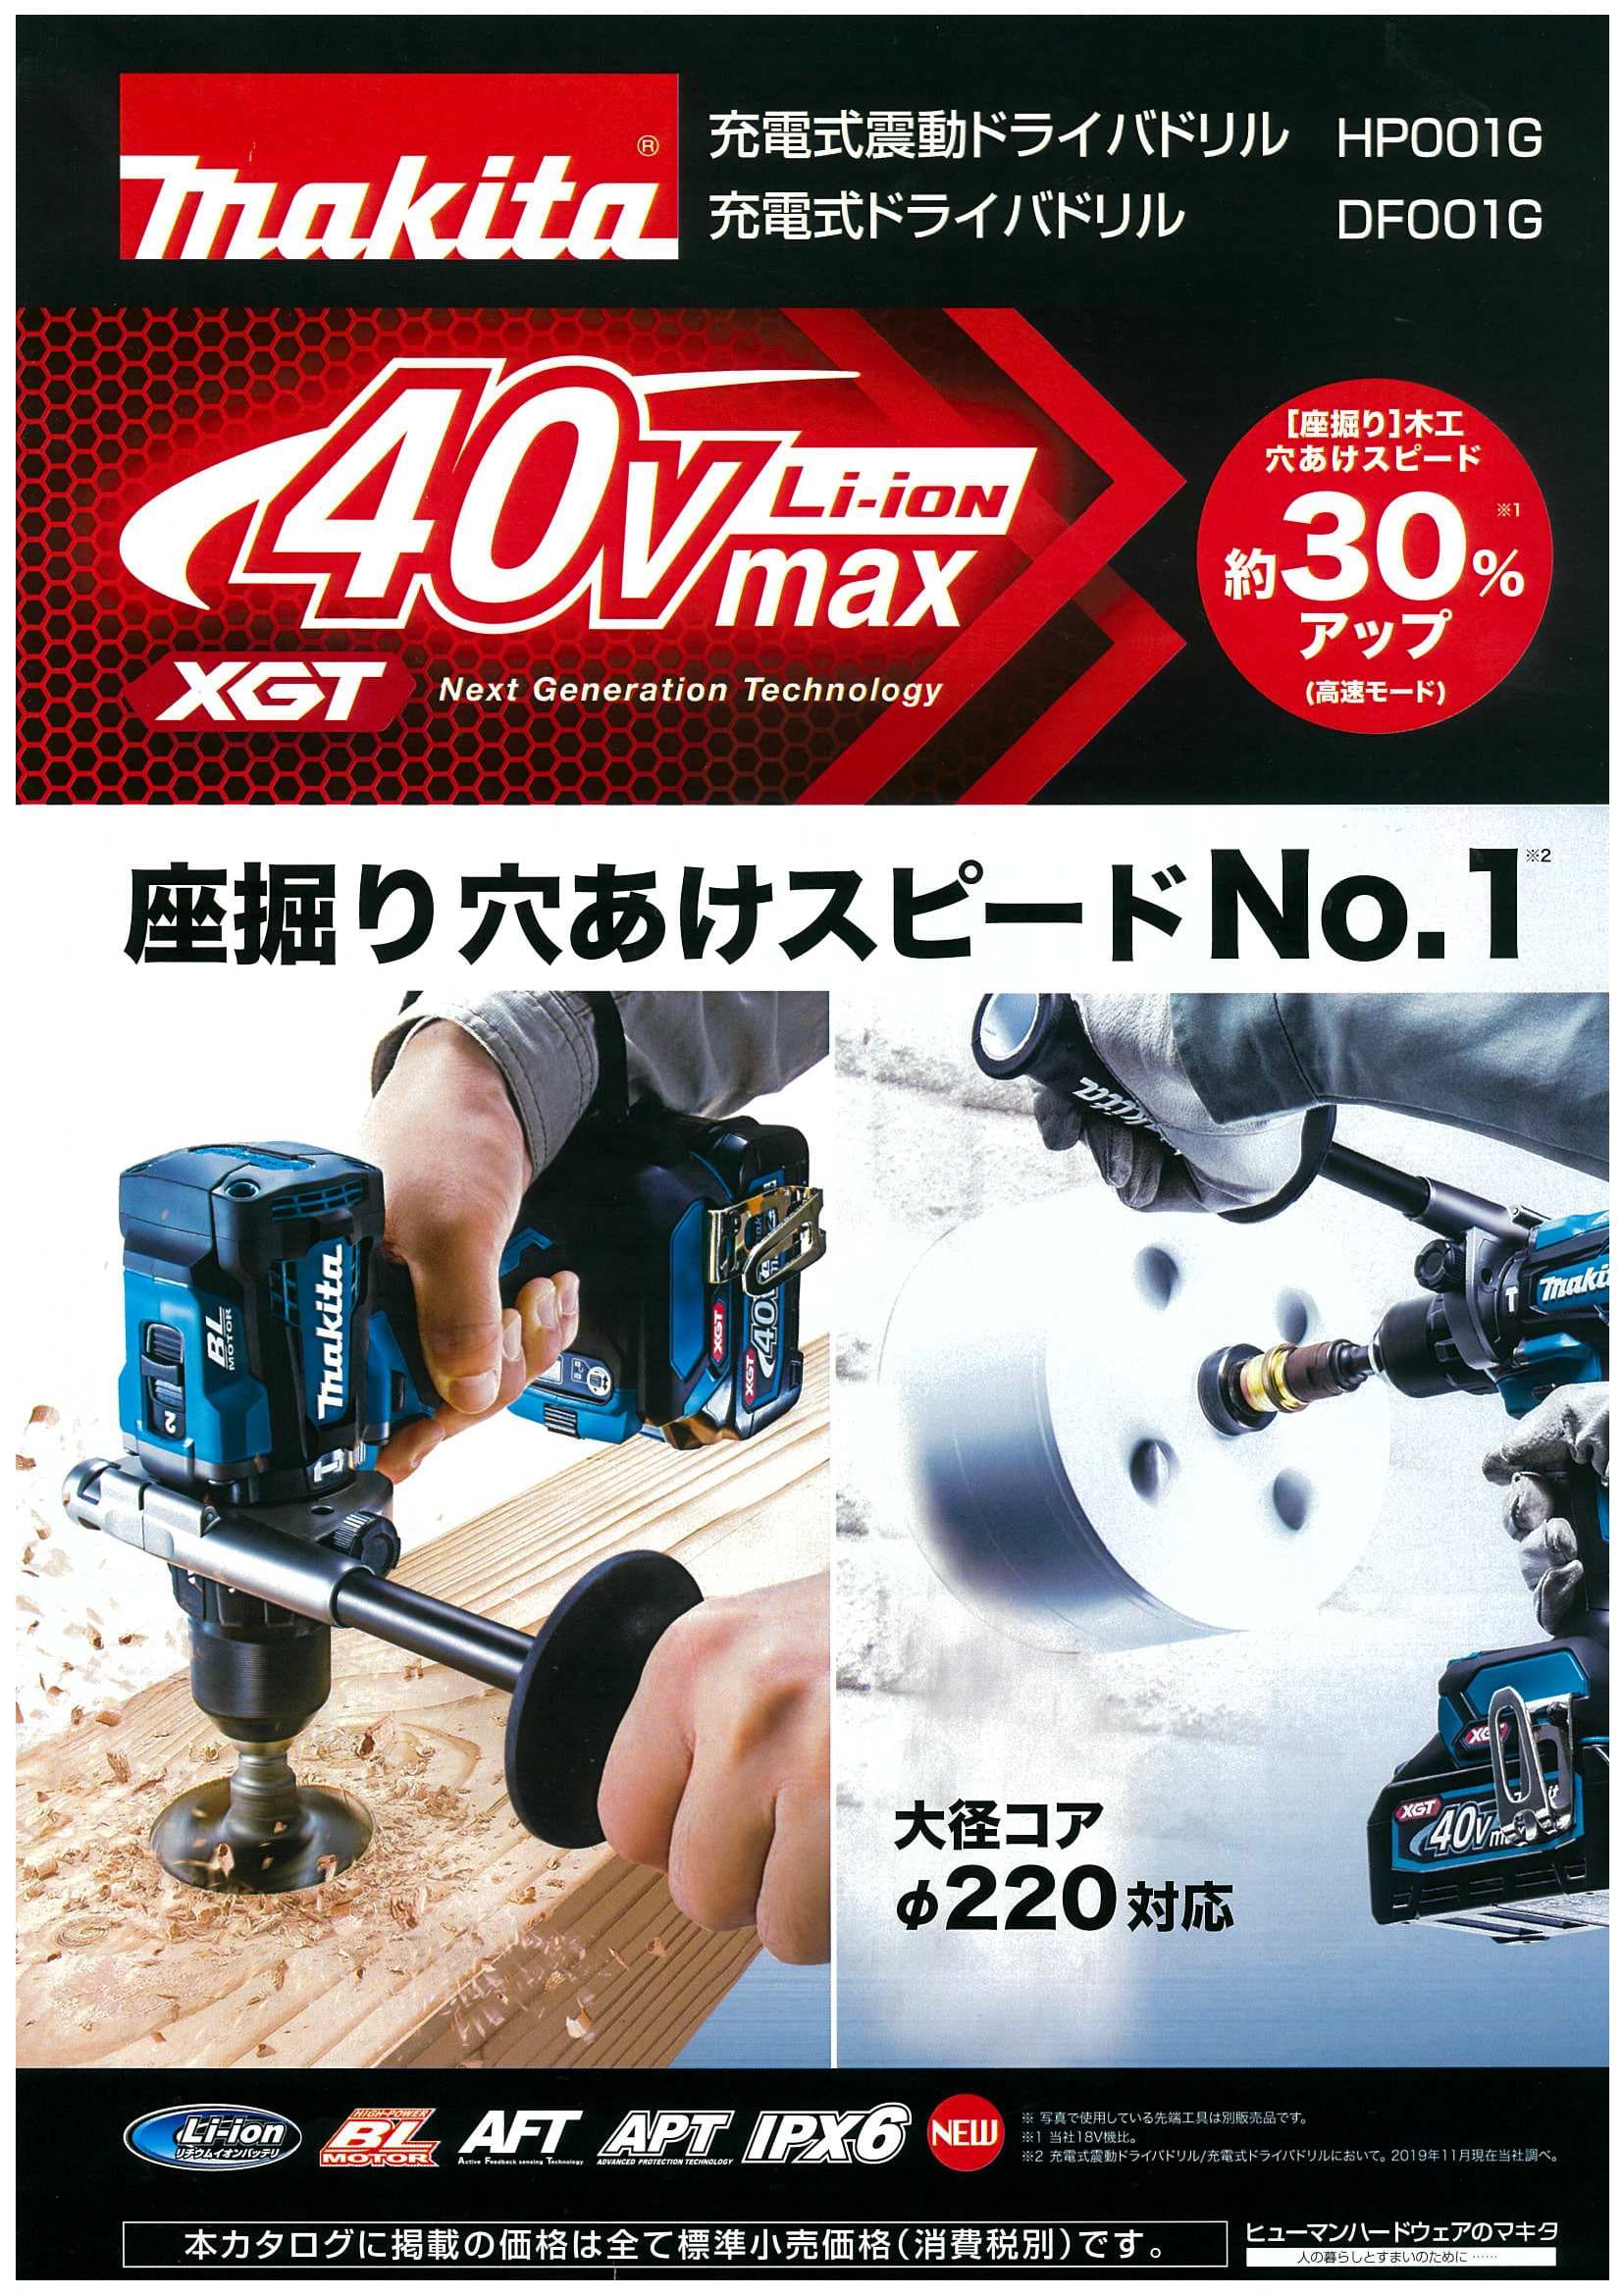 マキタ DF001GRDX 40Vmax充電式ドライバドリル ウエダ金物【公式サイト】